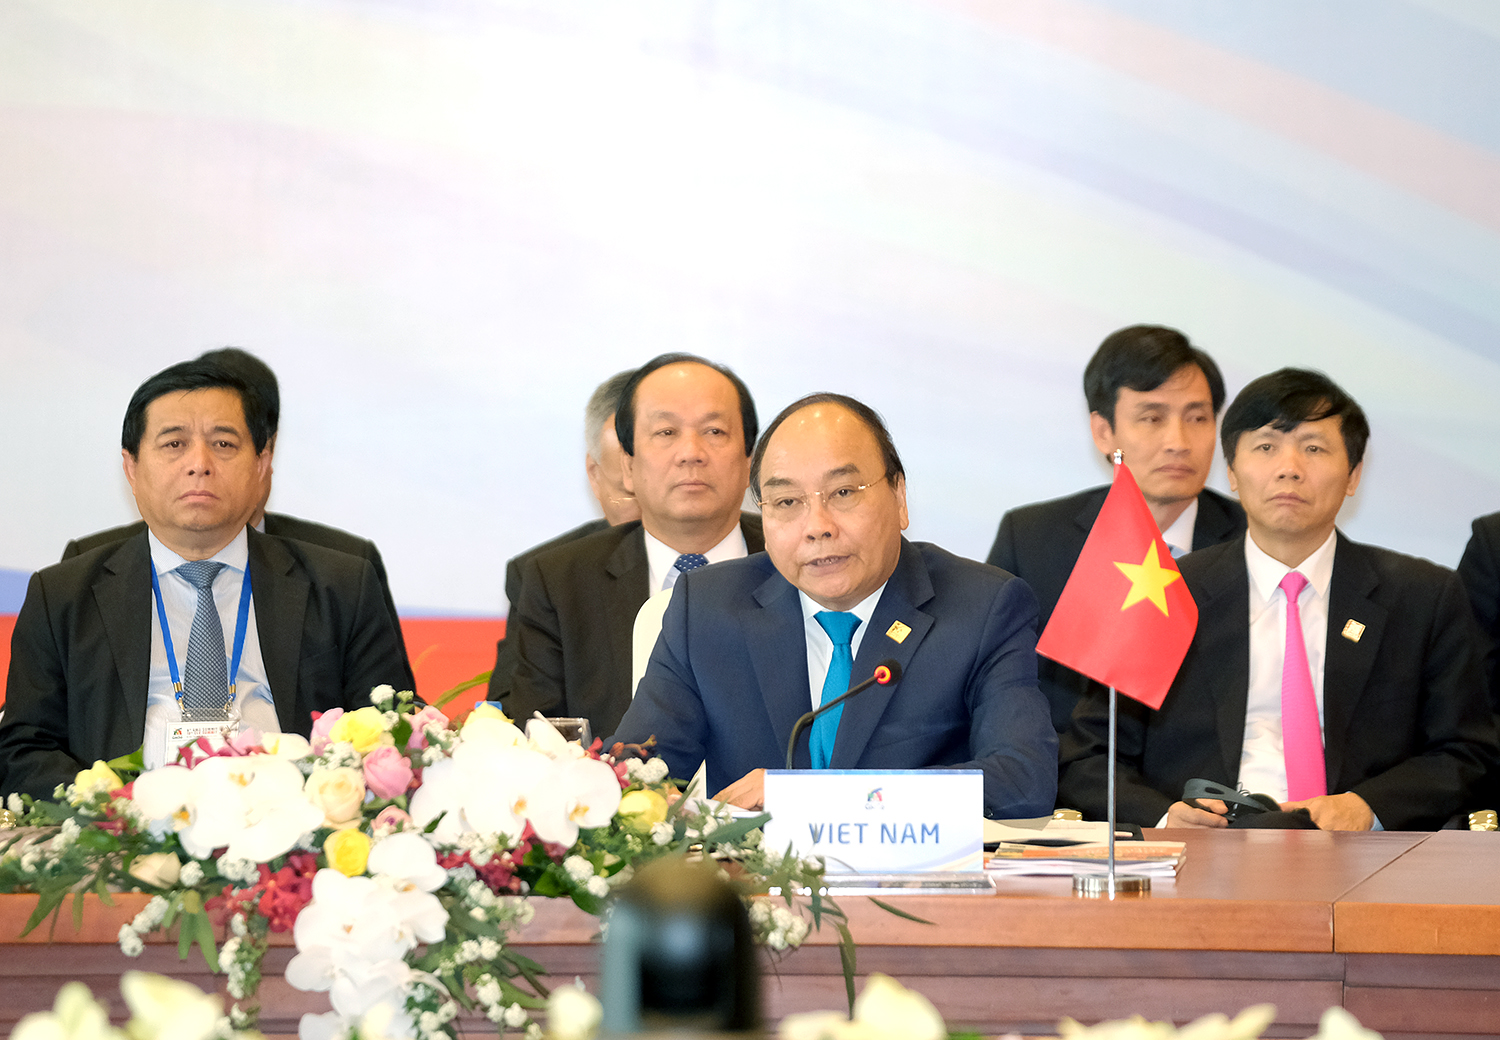 Thủ tướng Nguyễn Xuân Phúc phát biểu tại phiên họp kín Hội nghị Thượng đỉnh GMS 6. - Ảnh: VGP/Quang Hiếu